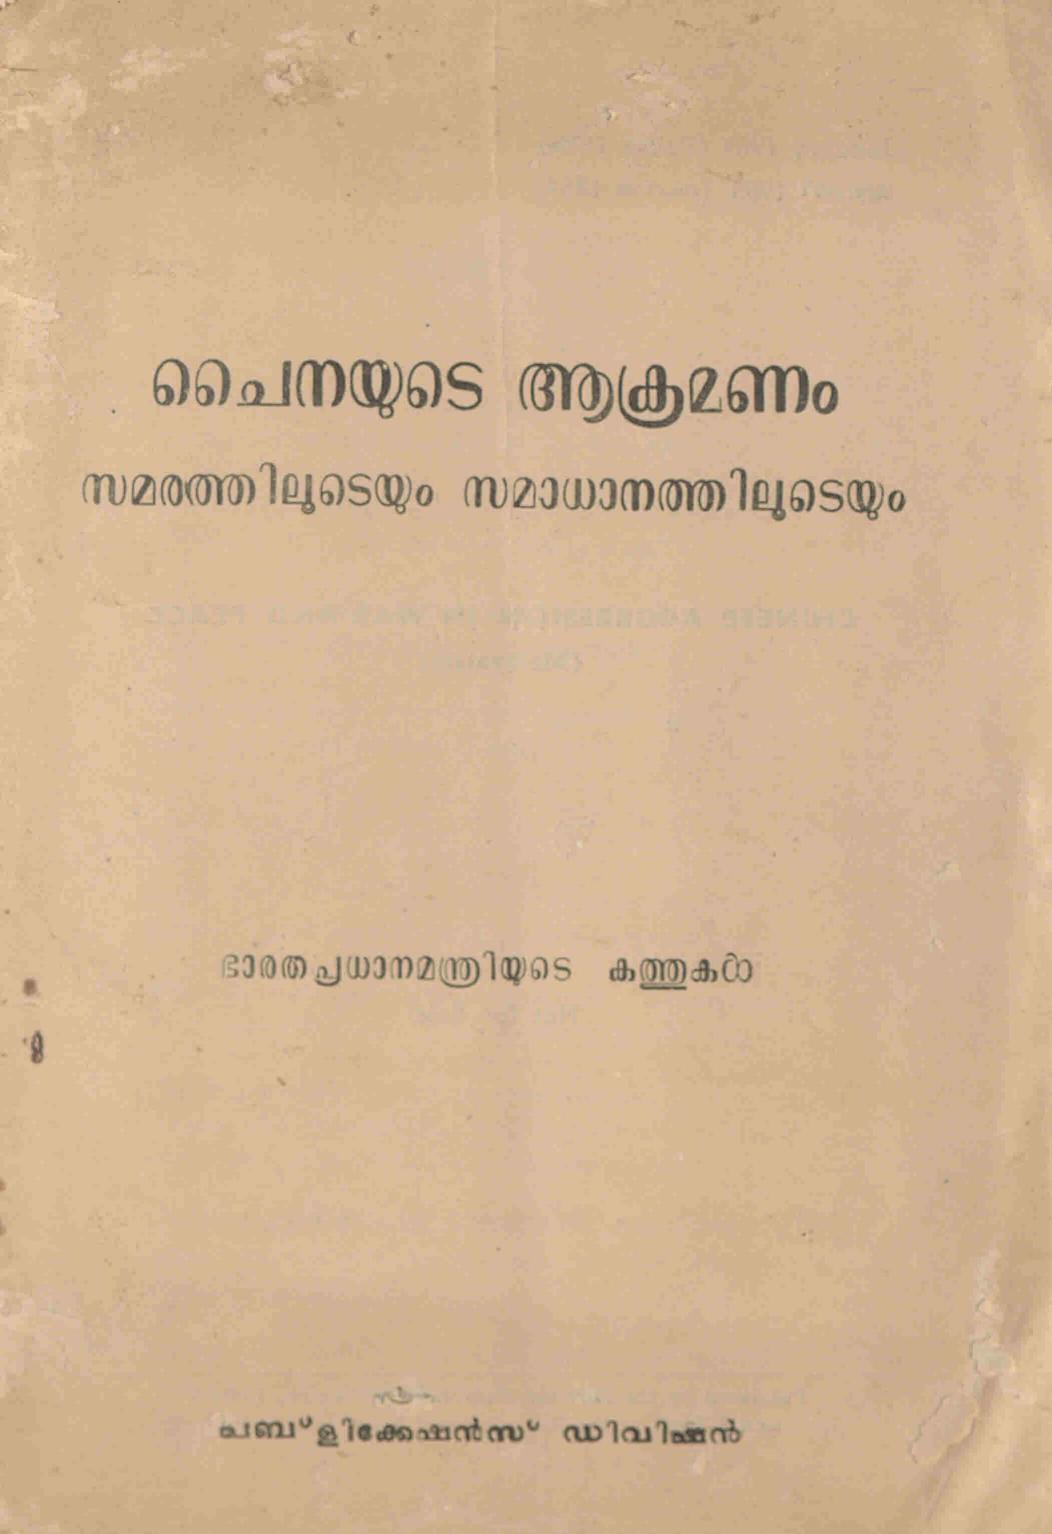 1963 - ചൈനയുടെ ആക്രമണം - ഭാരത പ്രധാനമന്ത്രിയുടെ കത്തുകൾ